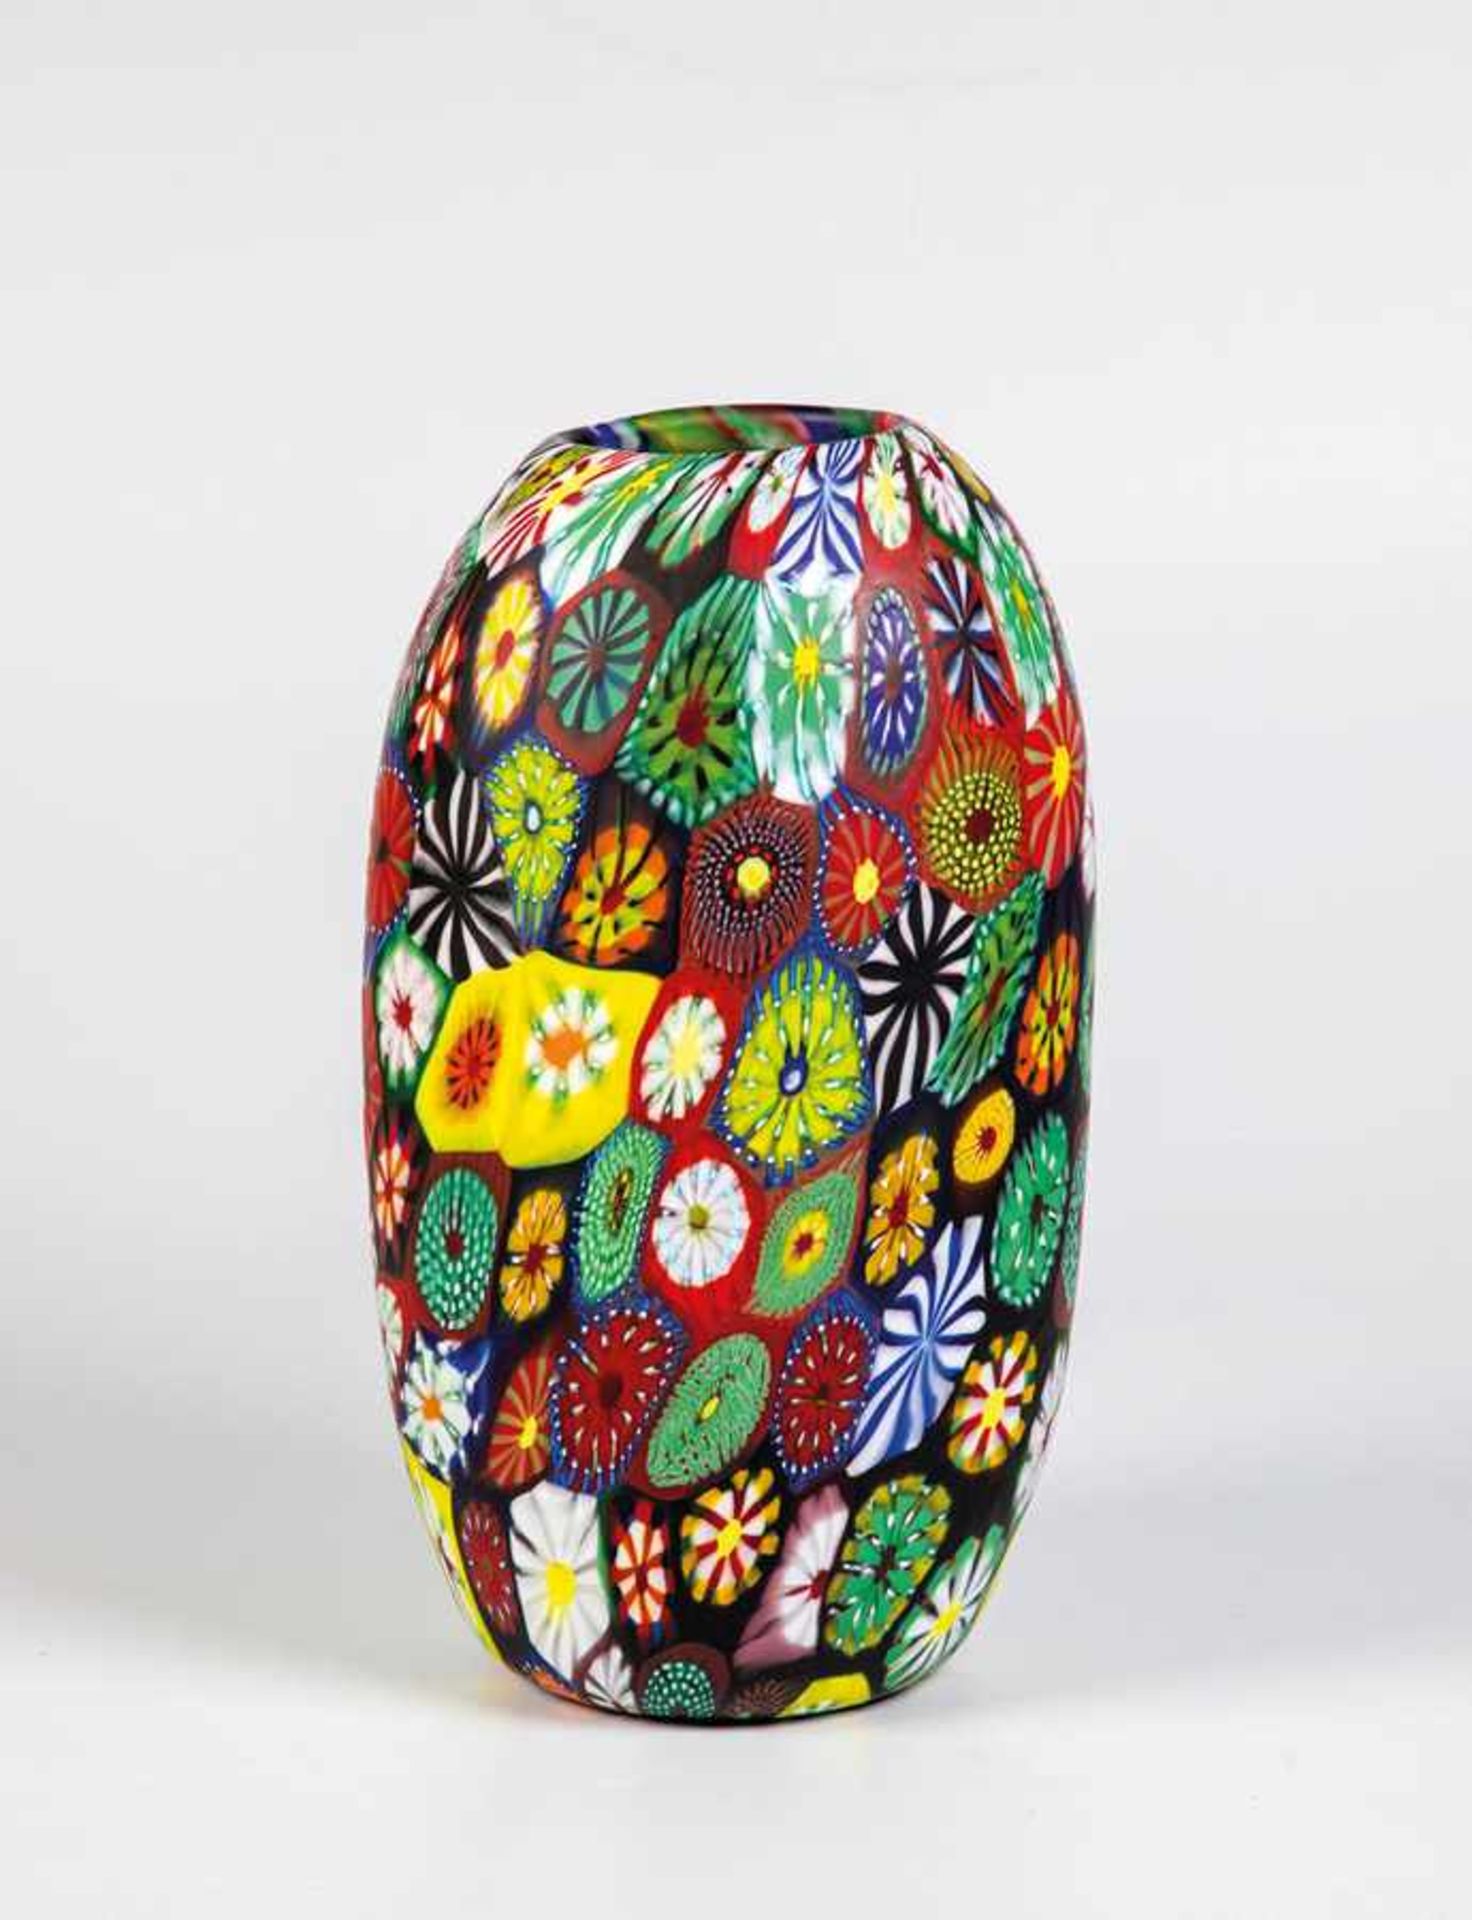 Seltene Vase mit Murrine "Kiku", "Millepunti" und "Redentore"Ermanno Toso (Entwurf), Fratelli